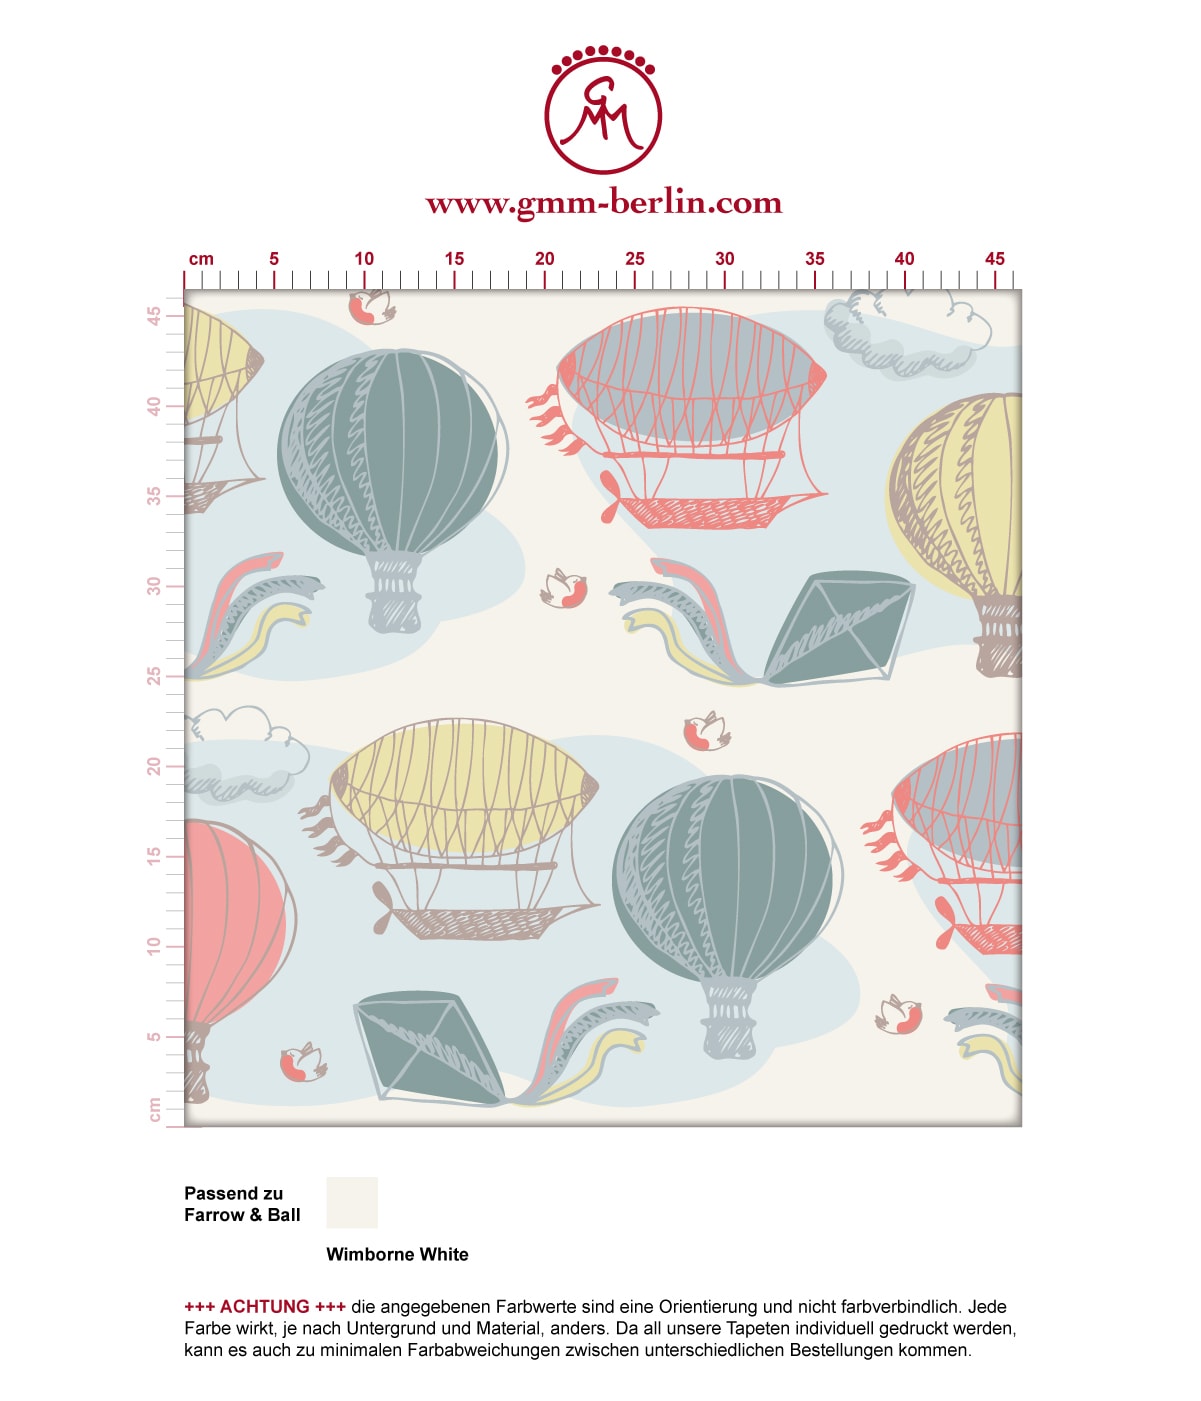 "Luftschlösser" - Traumhafte Tapete mit Drachen, Heißluftballons und Wolken in bunt angepasst an Farrow and Ball Wandfarben. Aus dem GMM-BERLIN.com Sortiment: Schöne Tapeten in creme Farbe